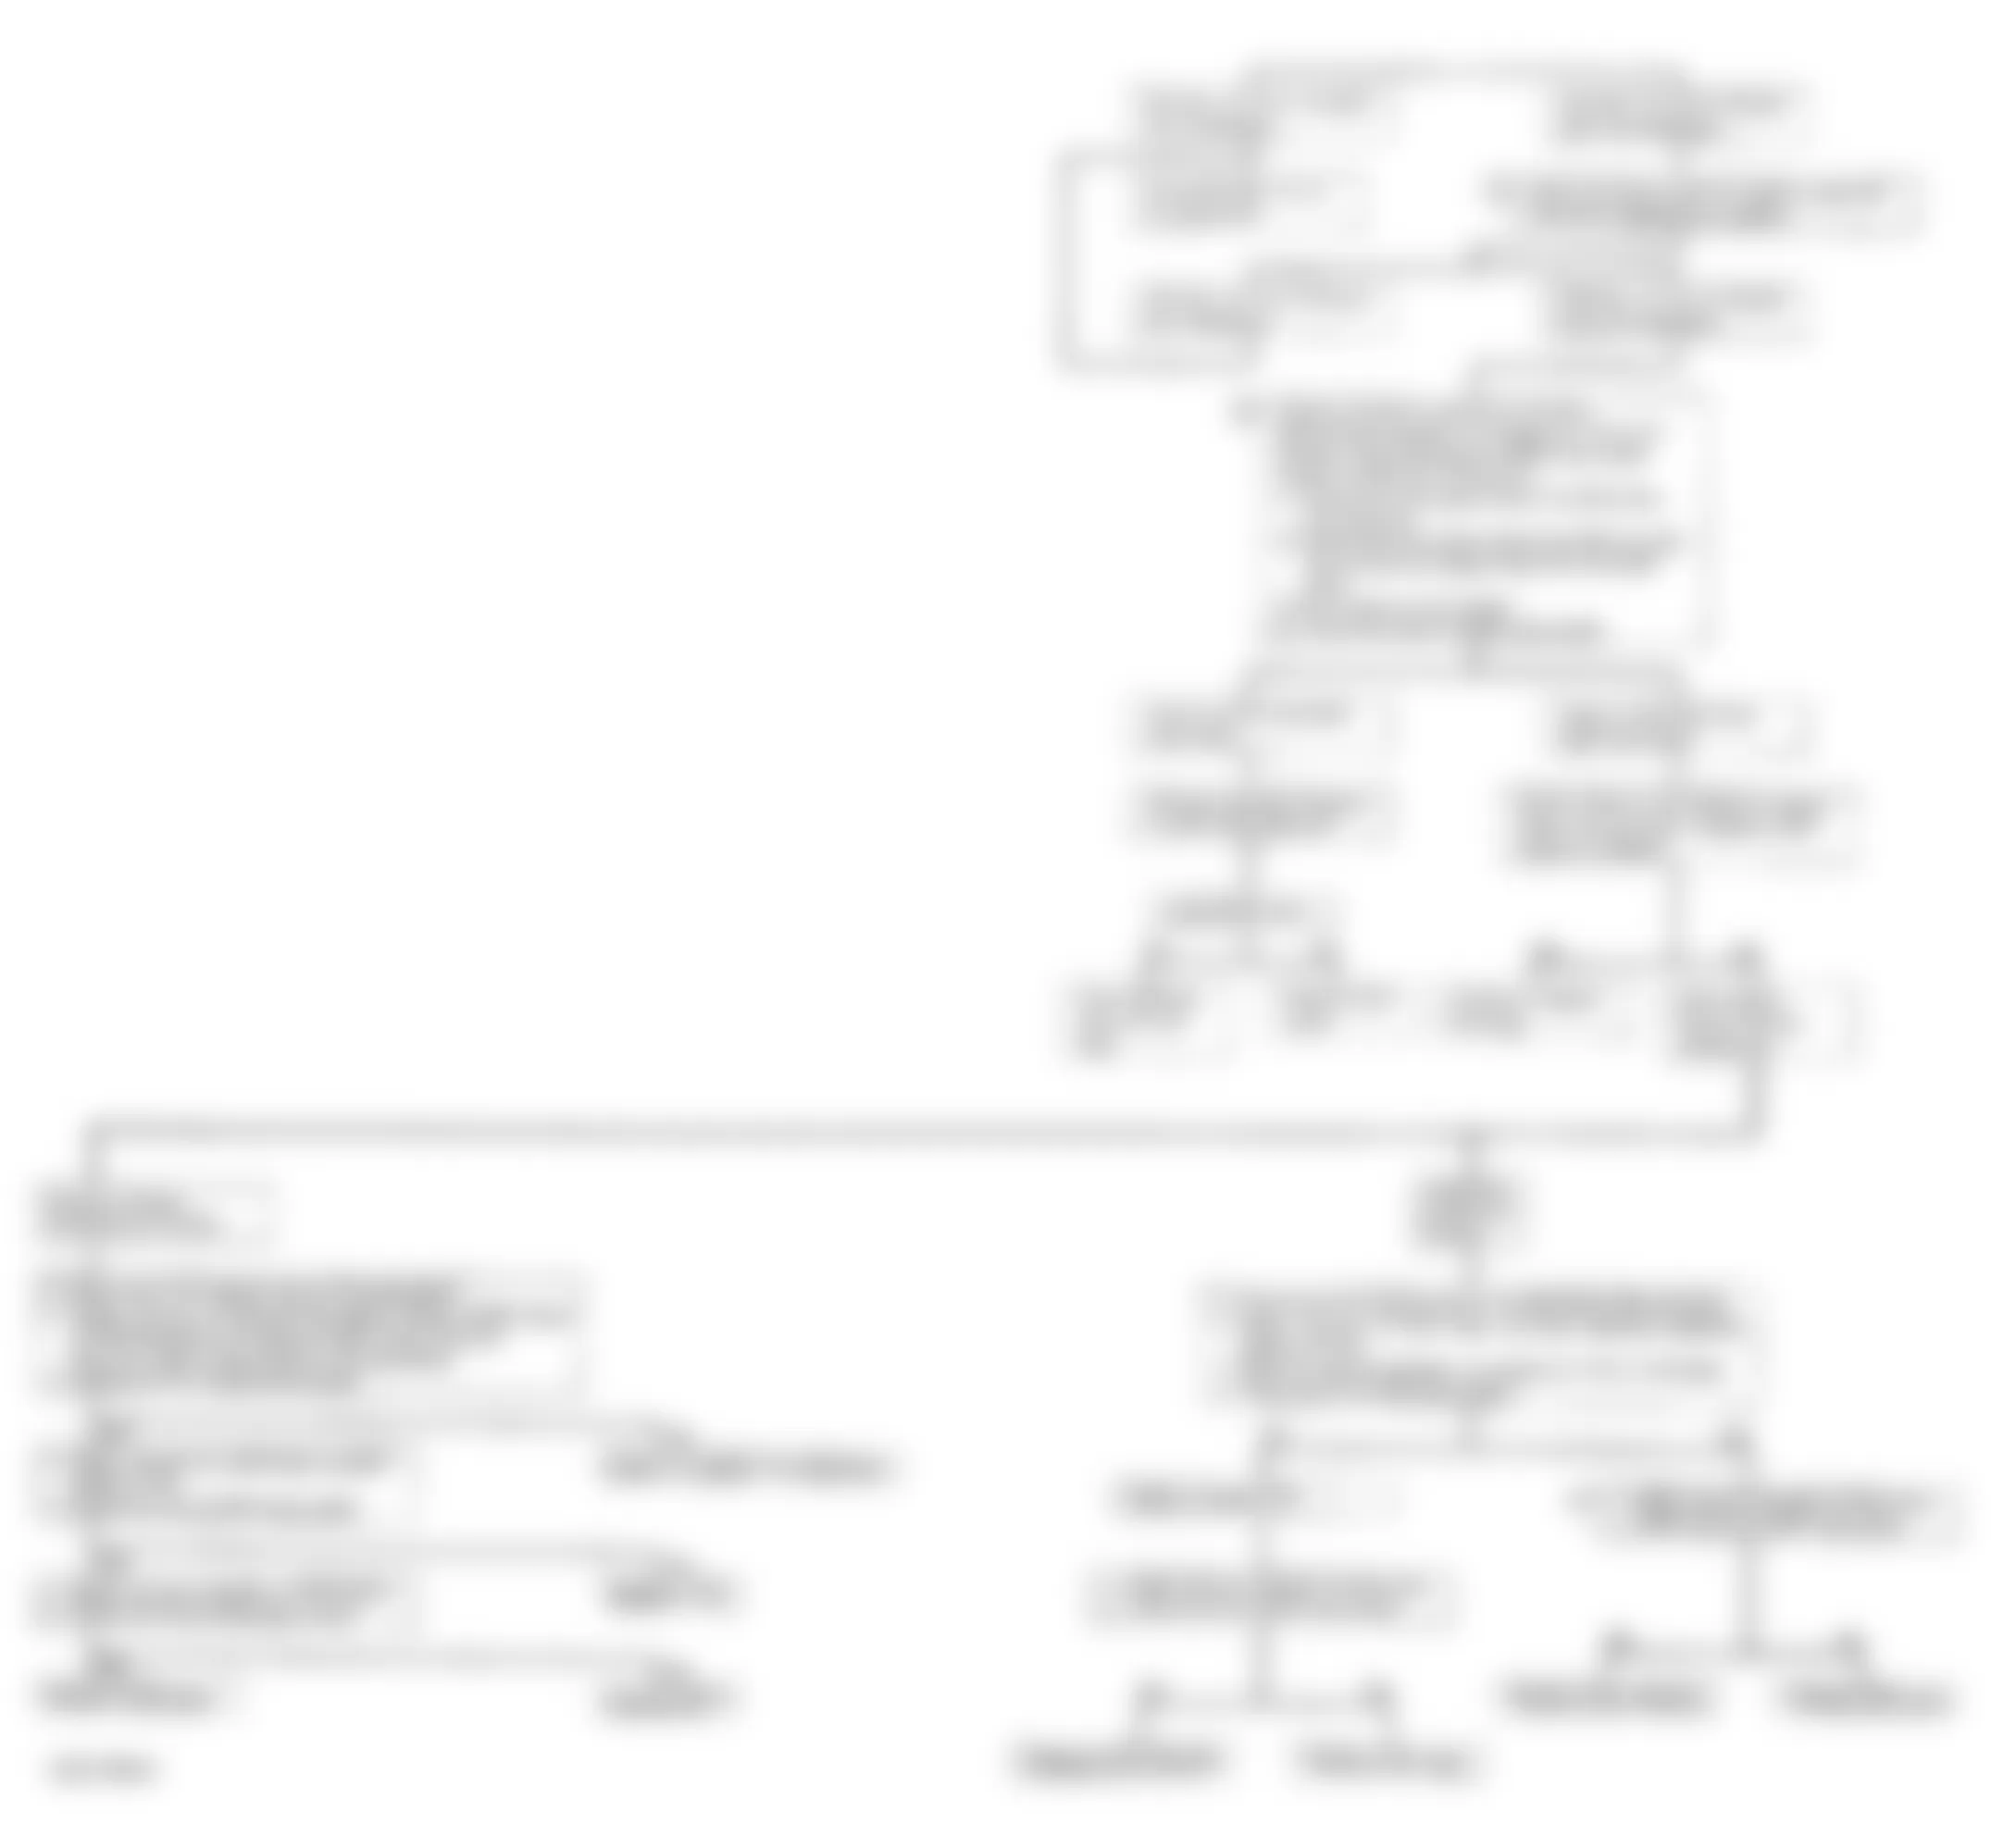 Isuzu Rodeo LS 1995 - Component Locations -  Code 32 - Diagnostic Flowchart (3 Of 3)